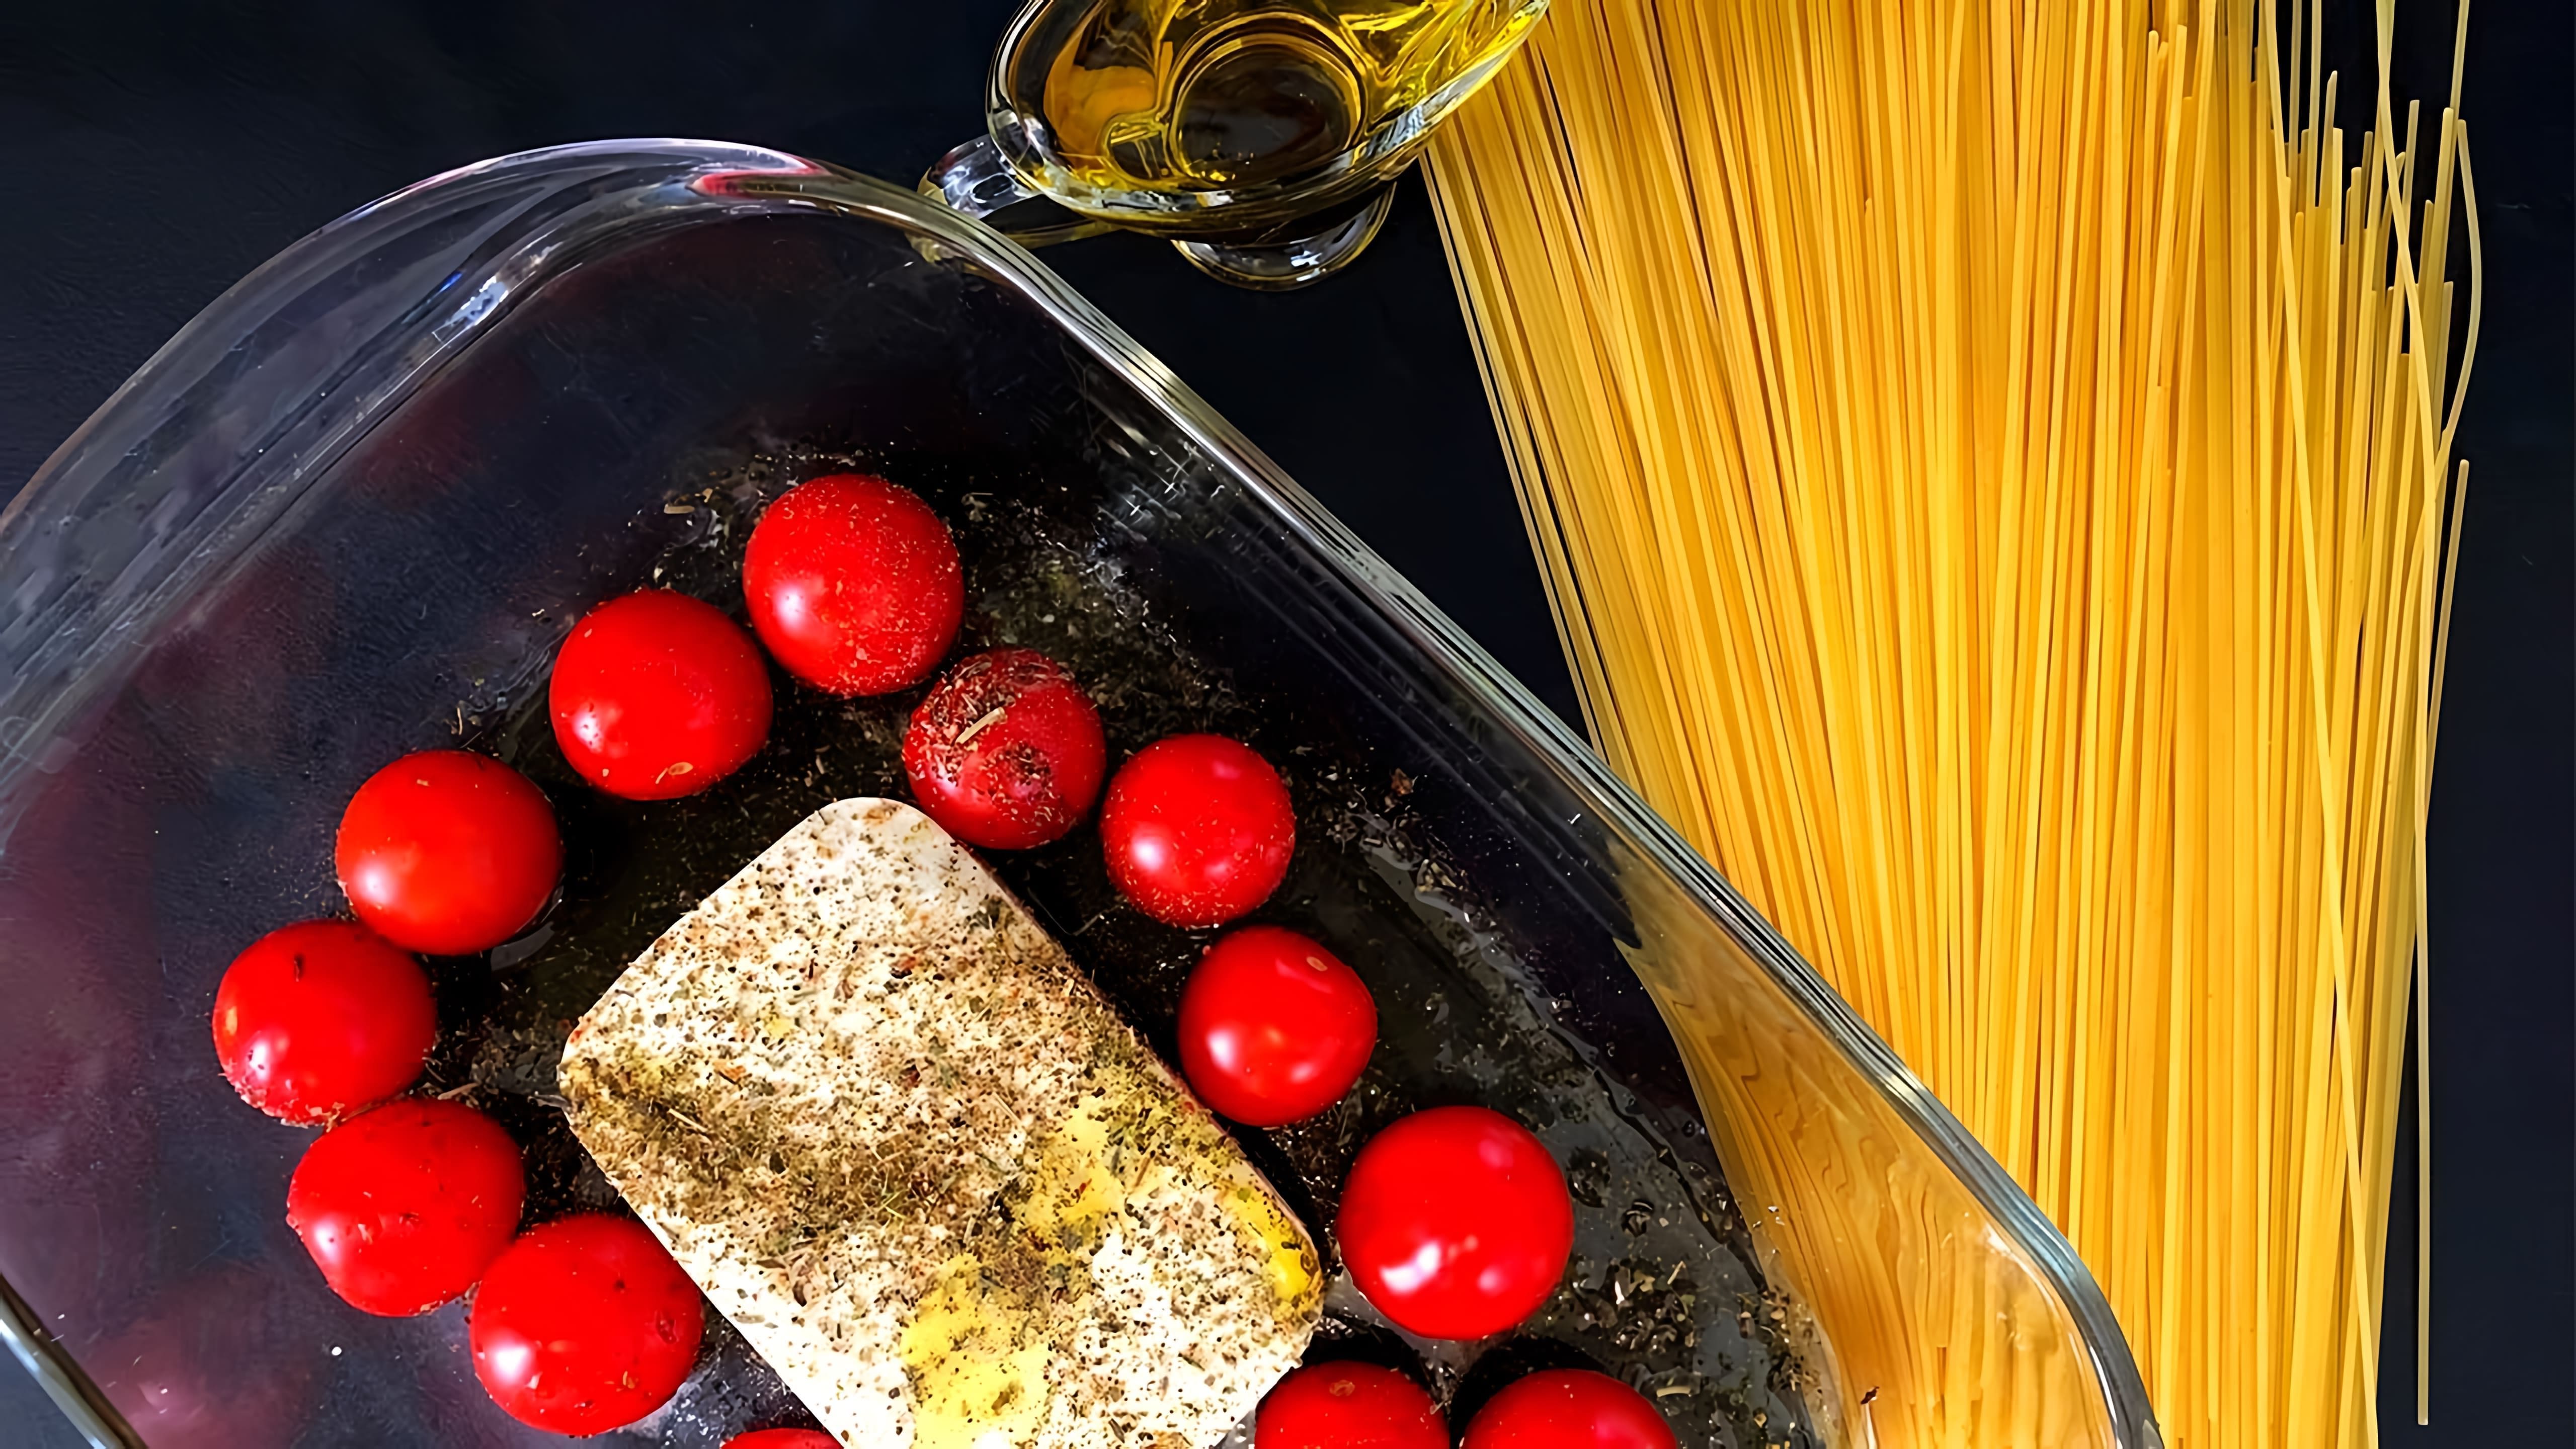 В этом видео демонстрируется рецепт приготовления итальянской пасты с сыром фета, помидорами черри и курицей